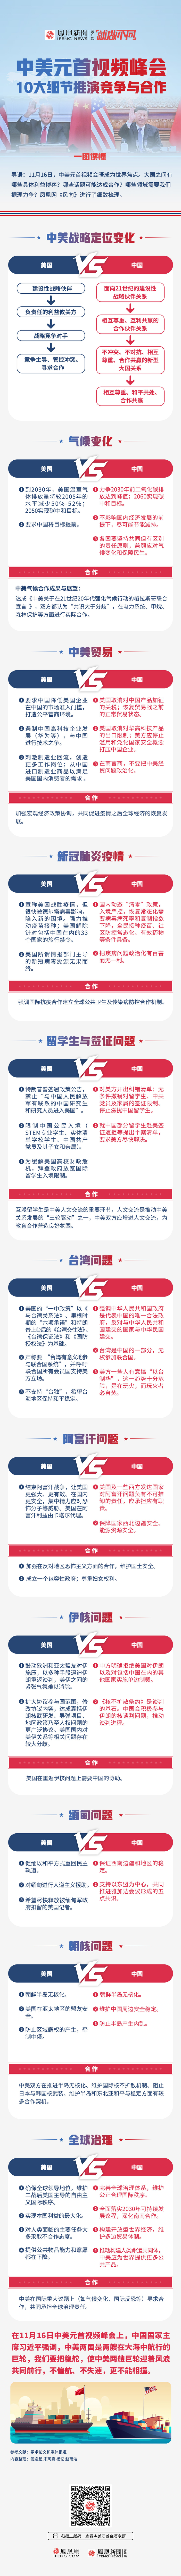 一图读懂｜中美双方坦率沟通 10大细节揭秘中国的据理力争